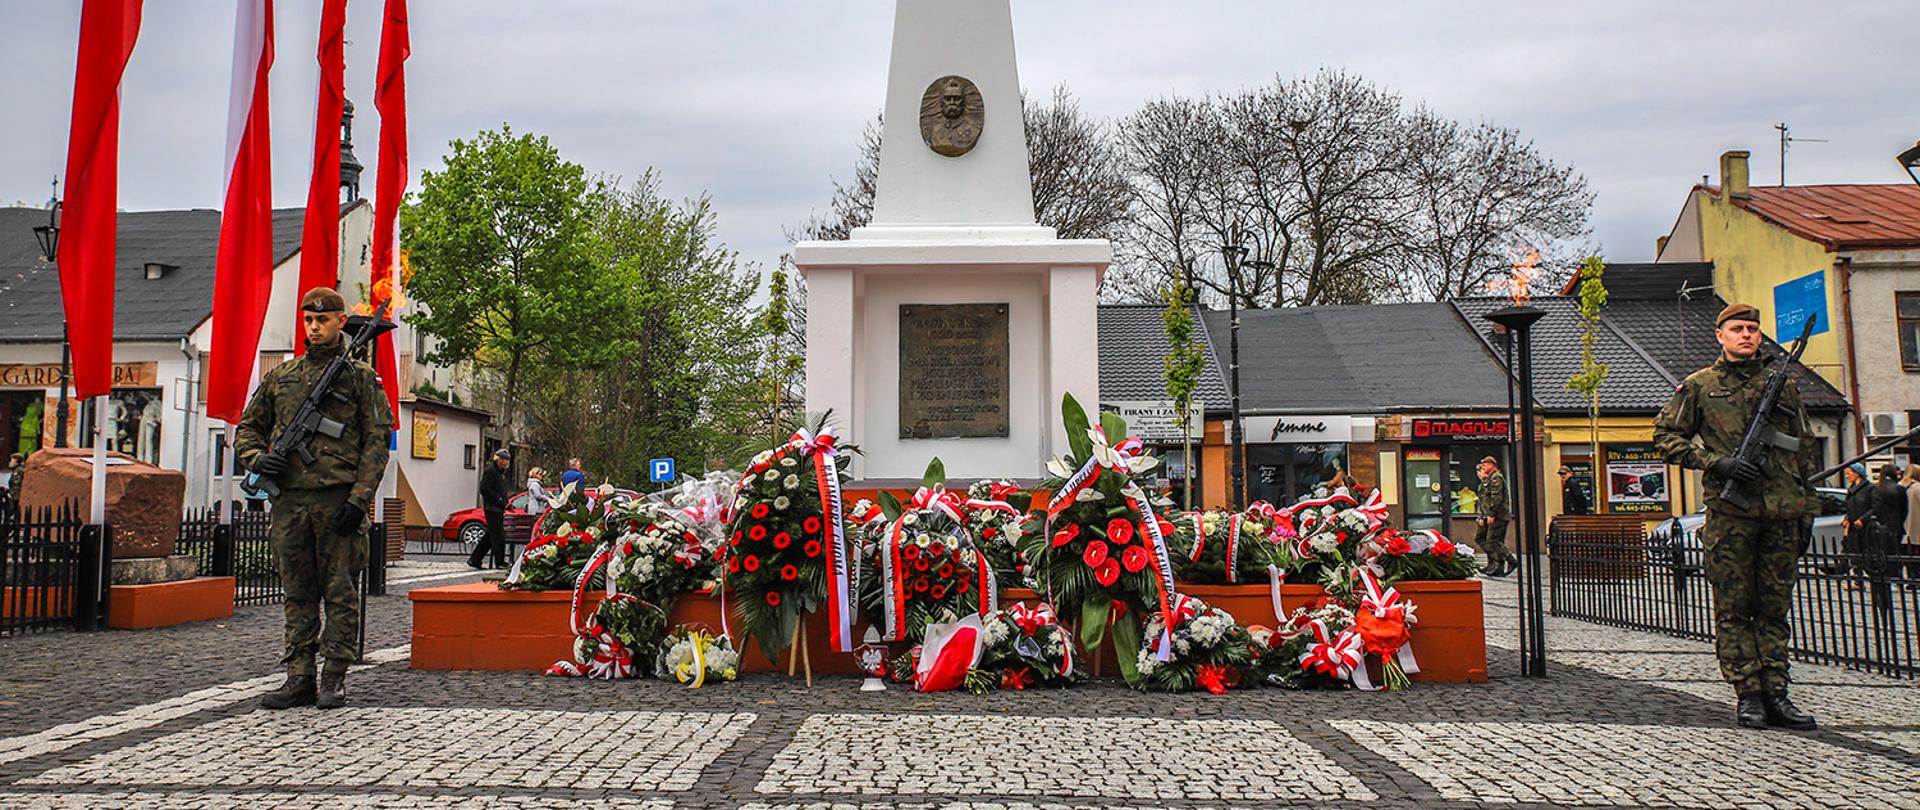 Zdjęcie przedstawia wartę żołnierzy przy pomniku Józefa Piłsudskiego w Kraśniku. Przy pomniku zostały złożone kwiaty, znicze i wiązanki. Na lewo od pomnika powiewają biało czerwone flagi.